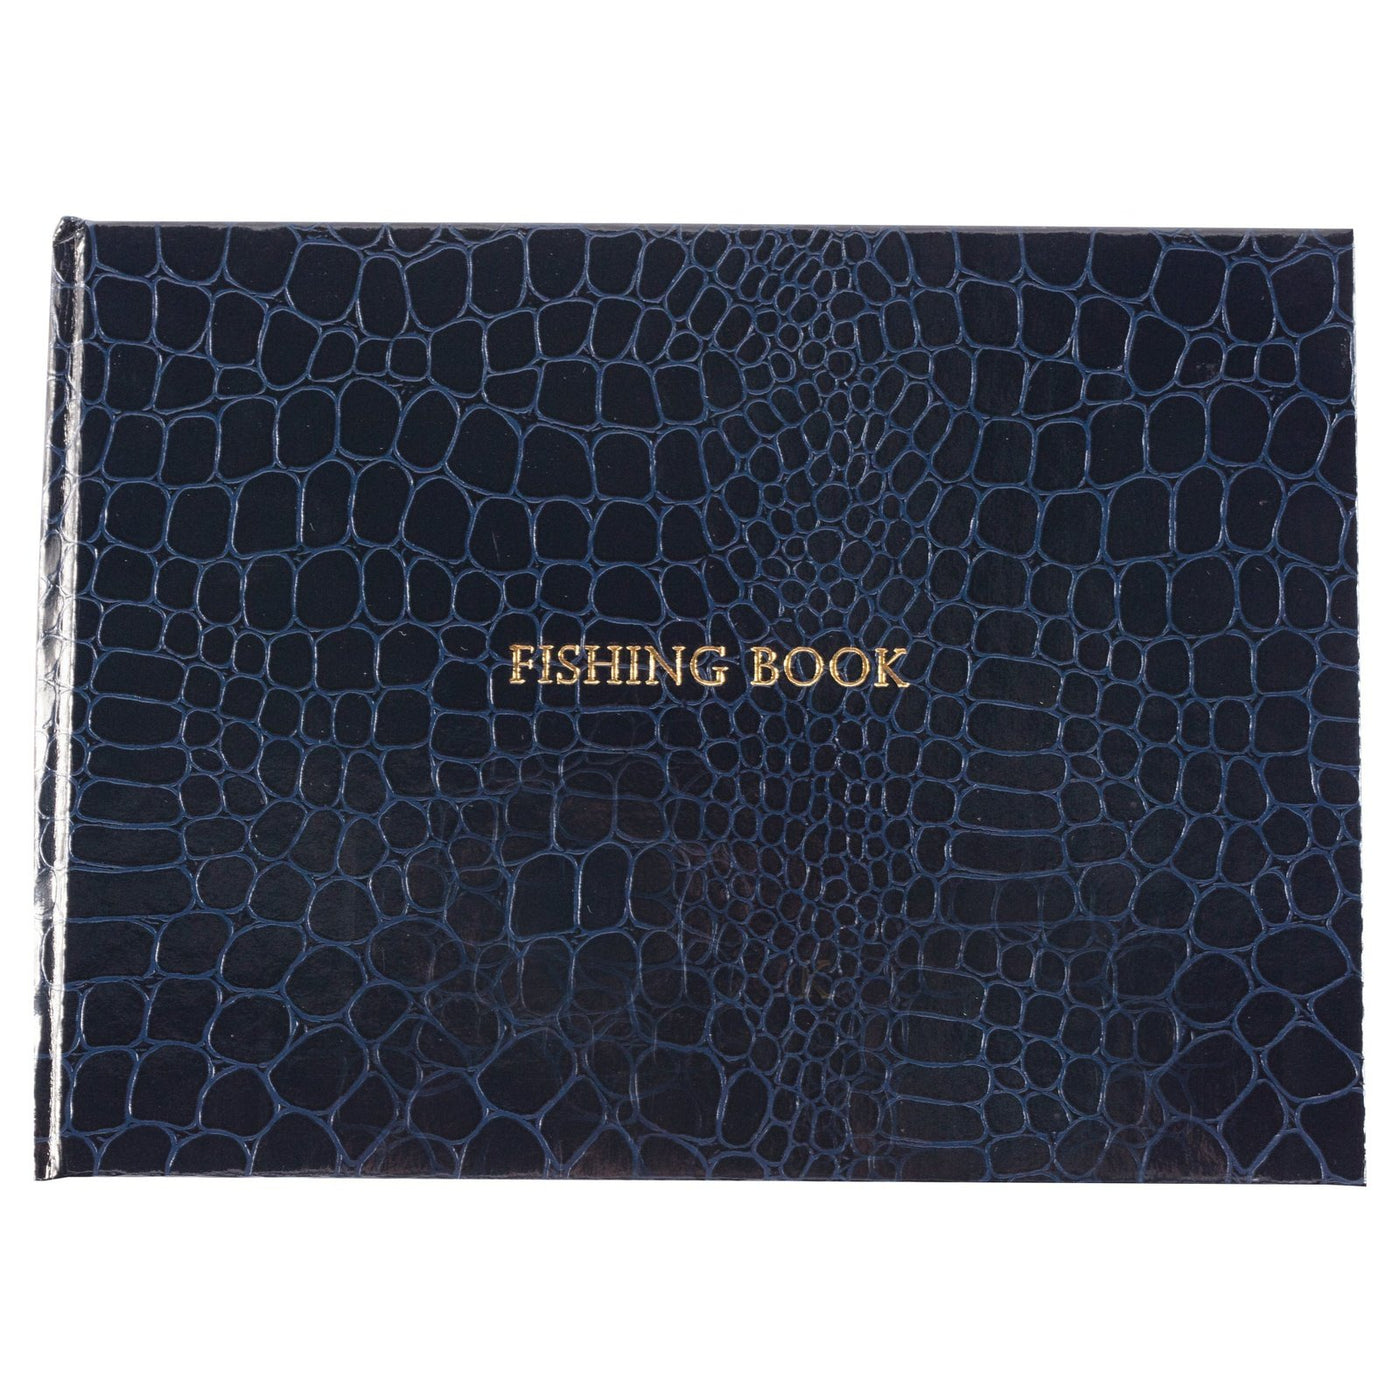 Locketts blue croc small fishing book